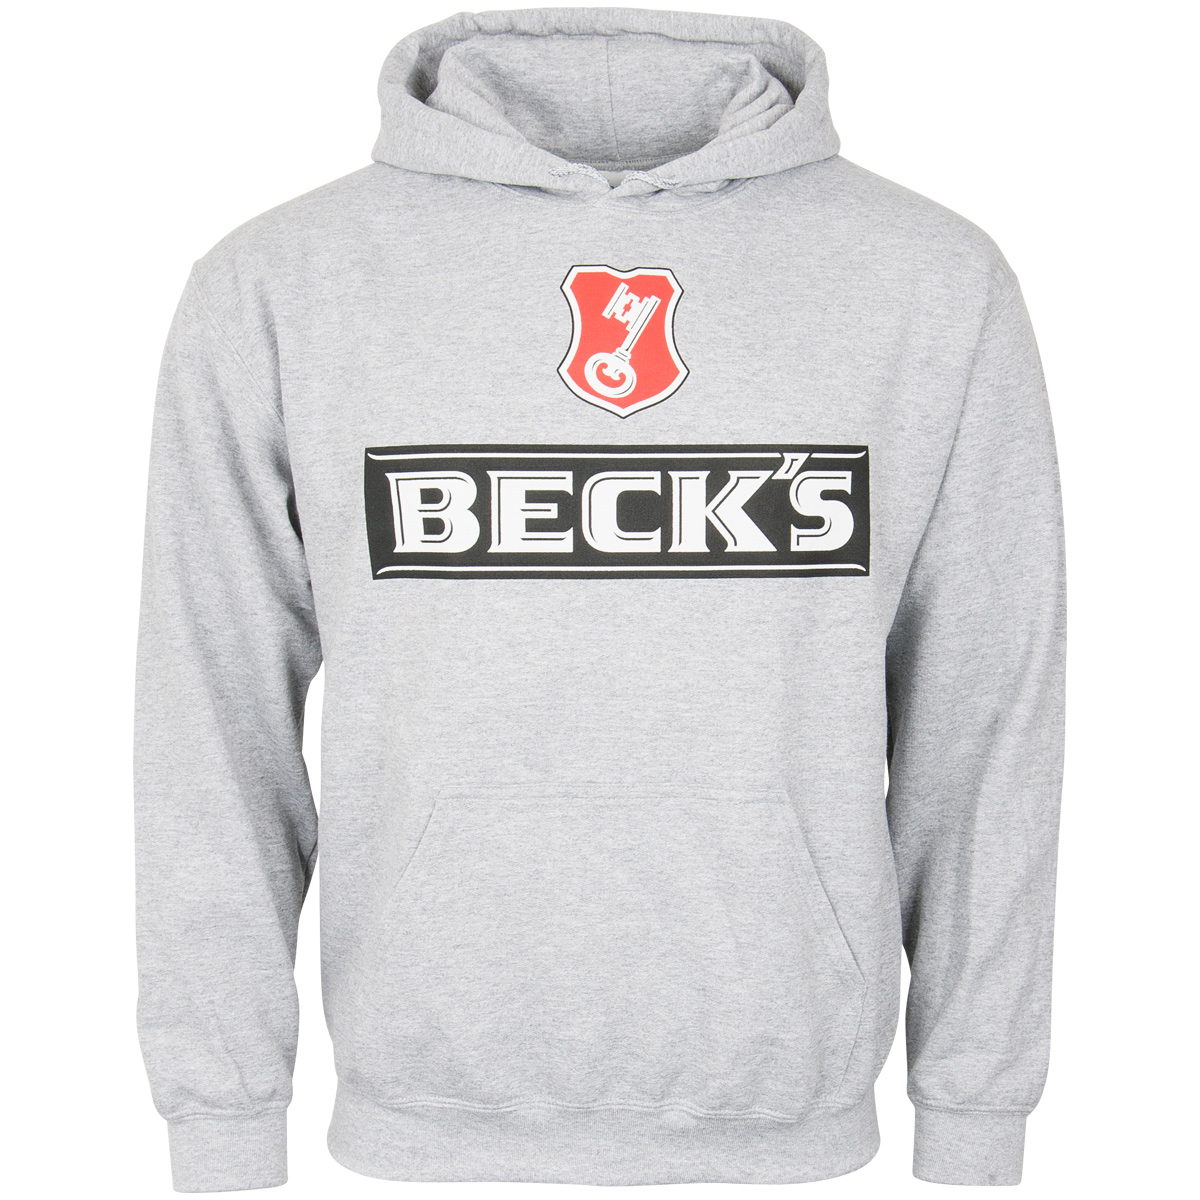 Beck's - Hoodie Logo - grey